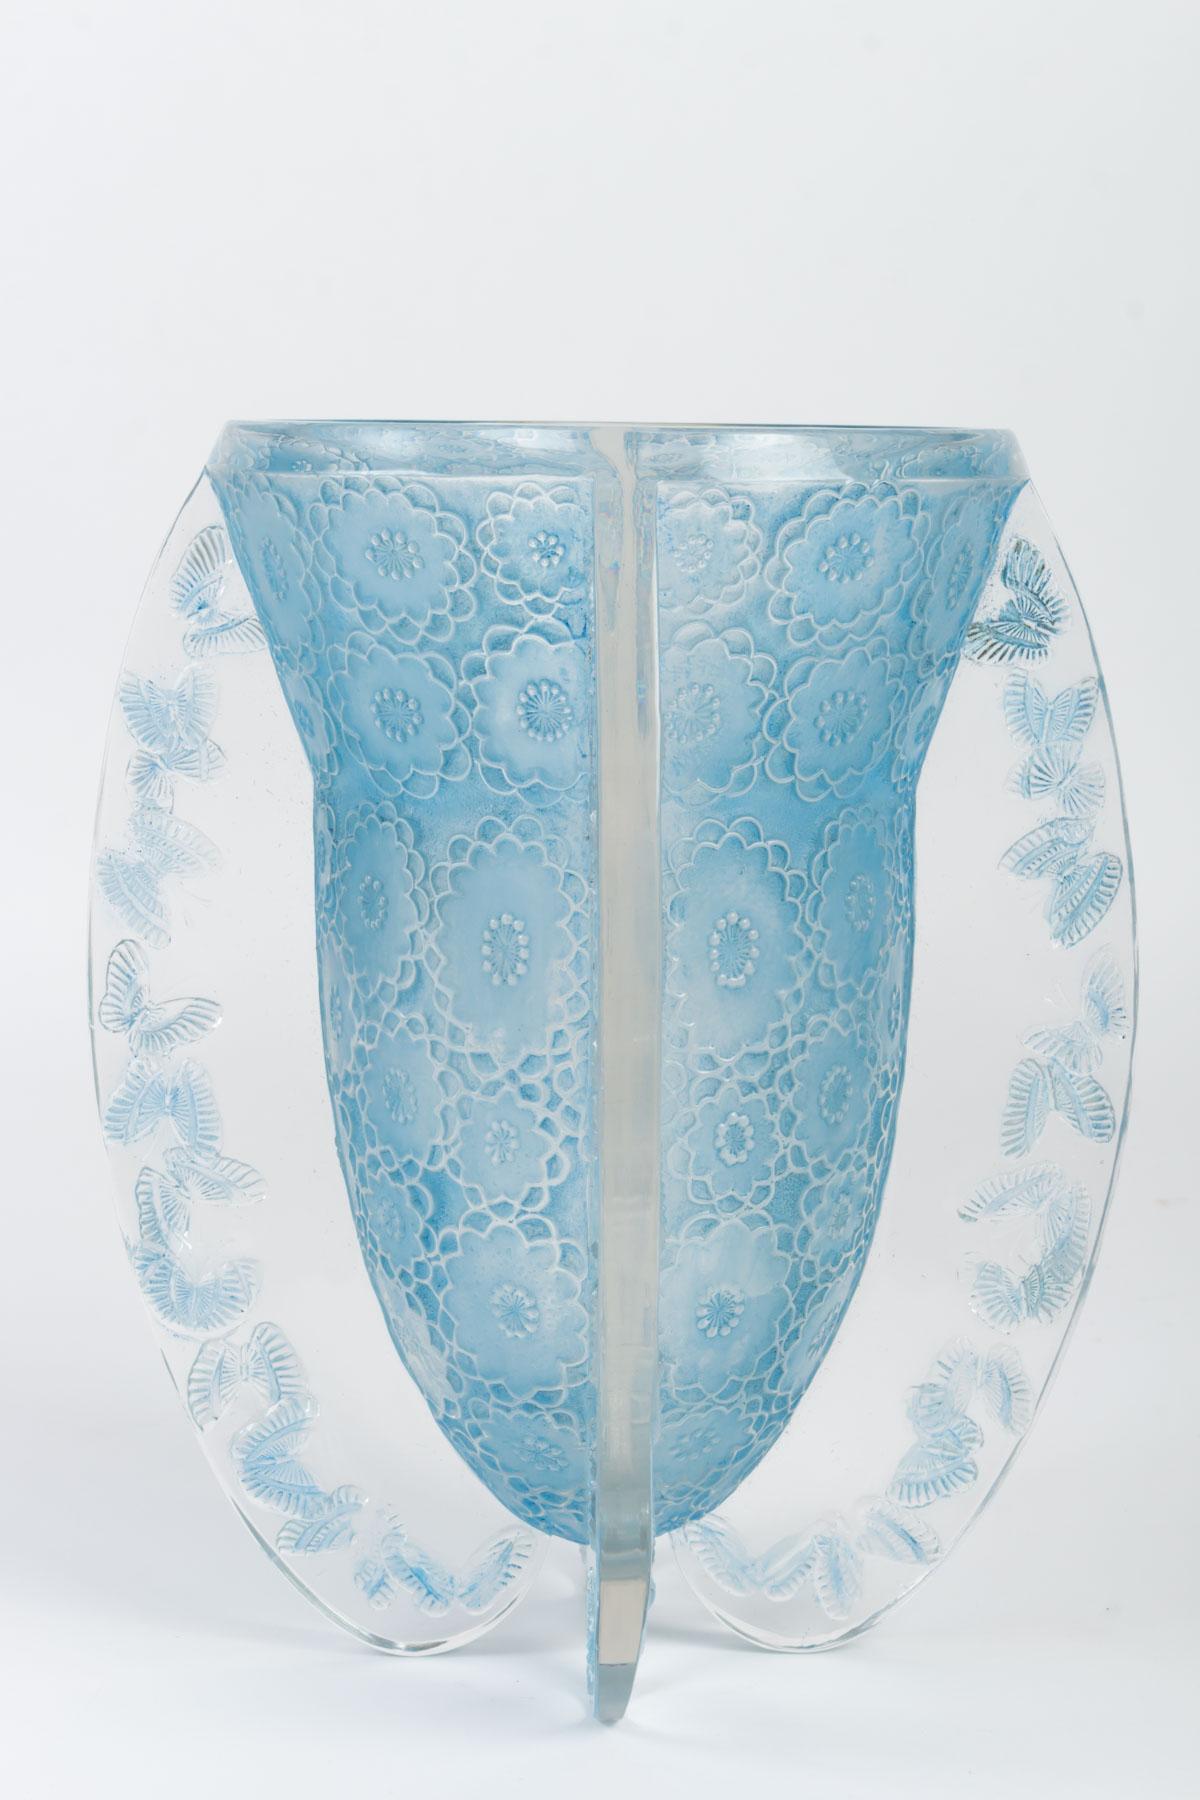 René Lalique (1860 - 1945) Vase 